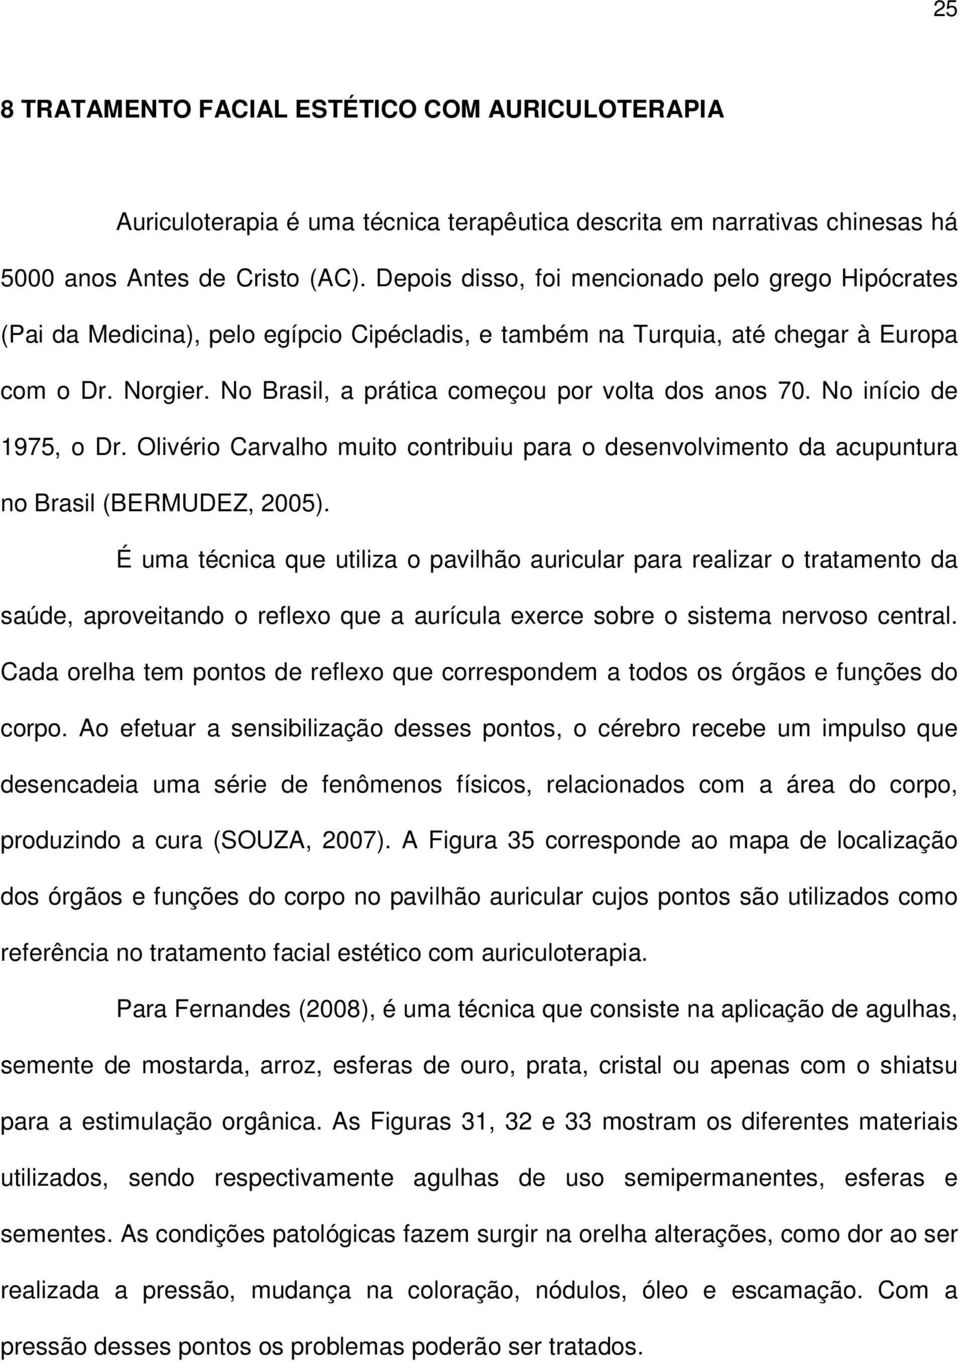 No Brasil, a prática começou por volta dos anos 70. No início de 1975, o Dr. Olivério Carvalho muito contribuiu para o desenvolvimento da acupuntura no Brasil (BERMUDEZ, 2005).